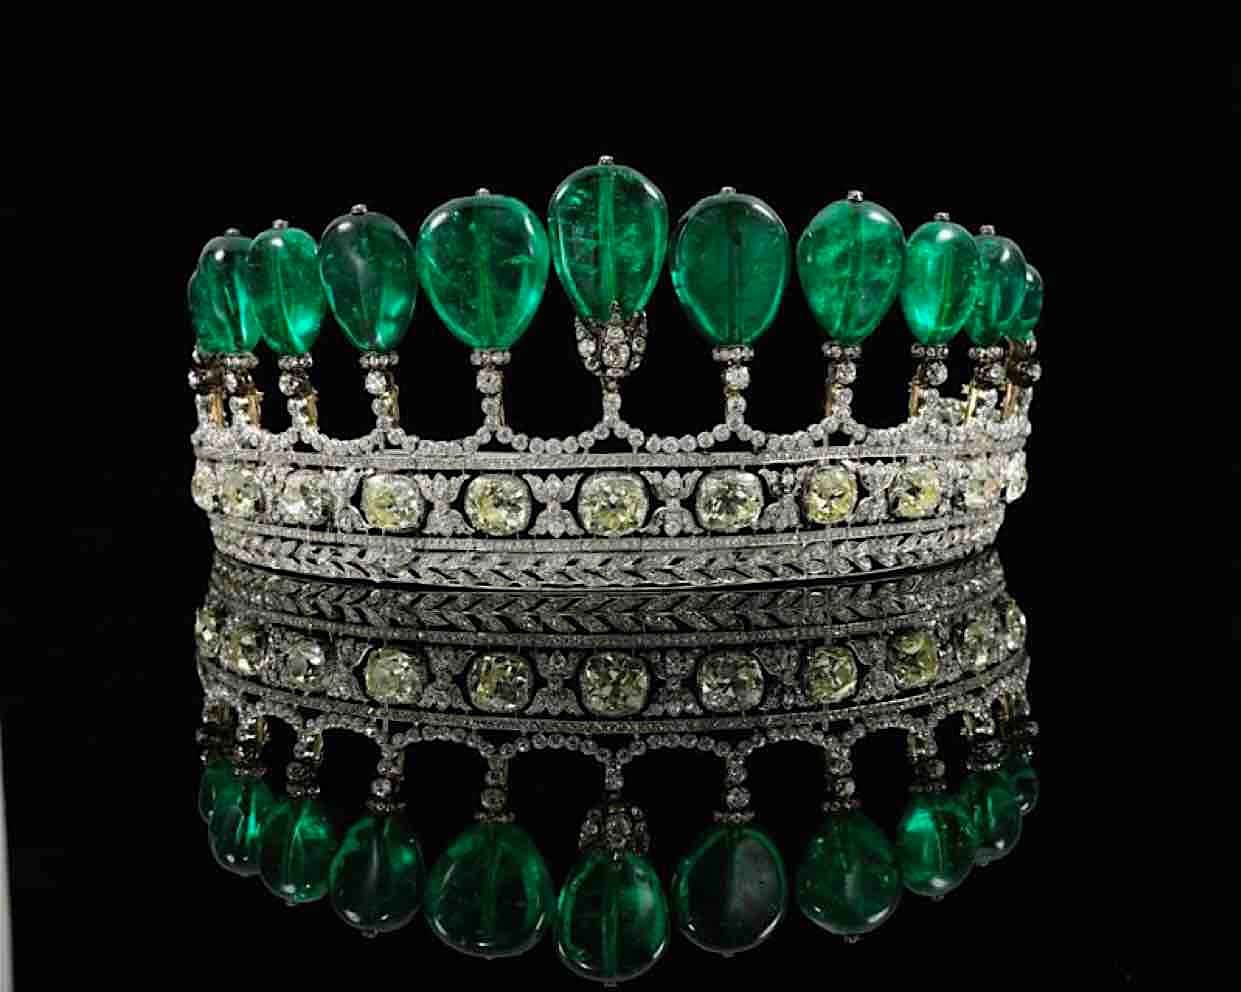 La antigua tiara de esmeralda y diamante, podría estar entre los 5 objetos antiguos más caros jamás vendido.